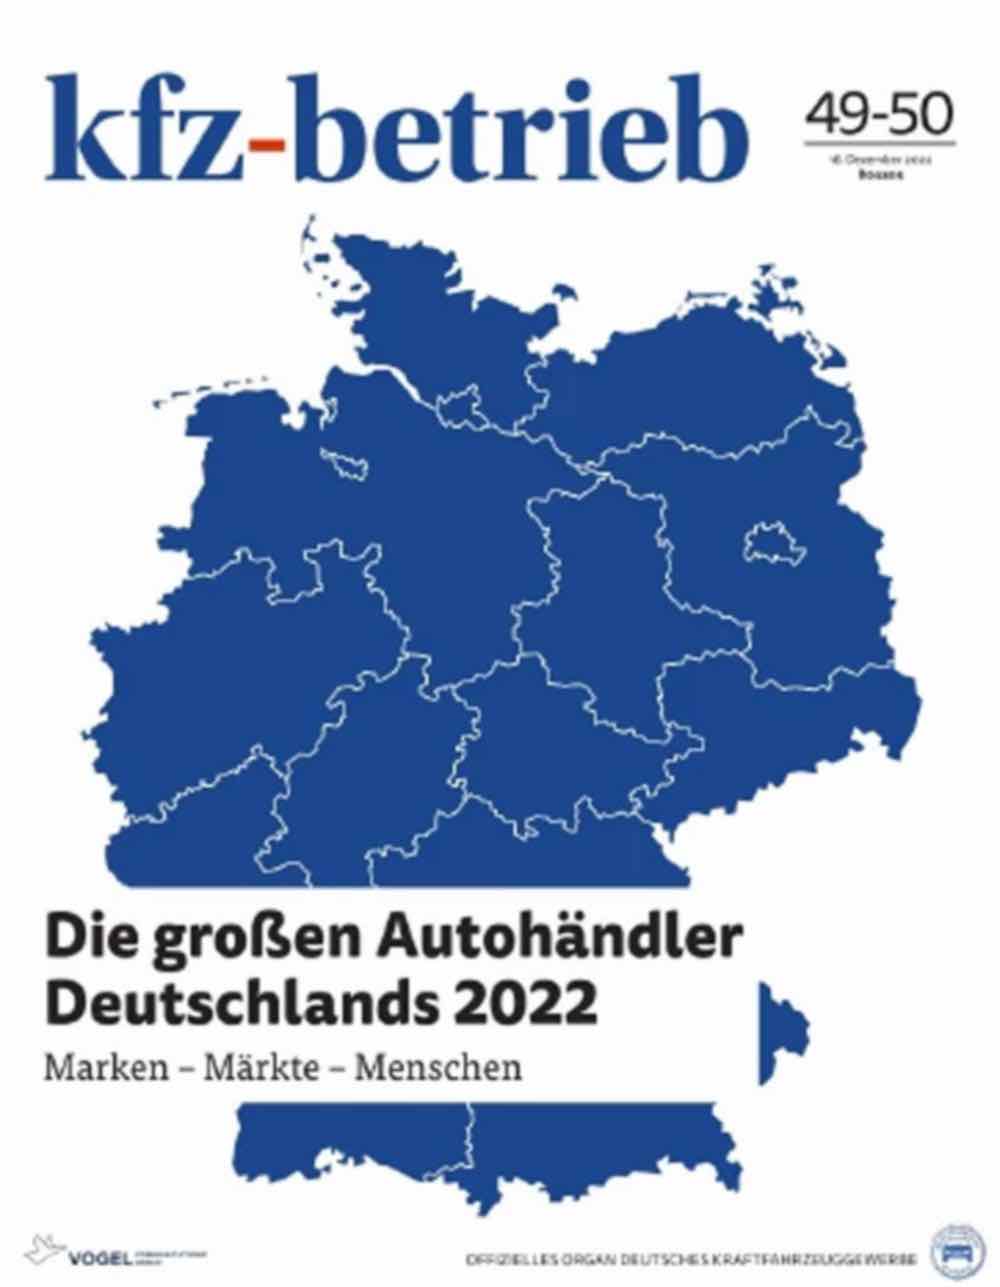 Die 100 großen Autohändler Deutschlands, Marktüberblick: Sonderheft liefert Zahlen zum Autohandel 2022 und porträtiert die Top 100 Autohausgruppen